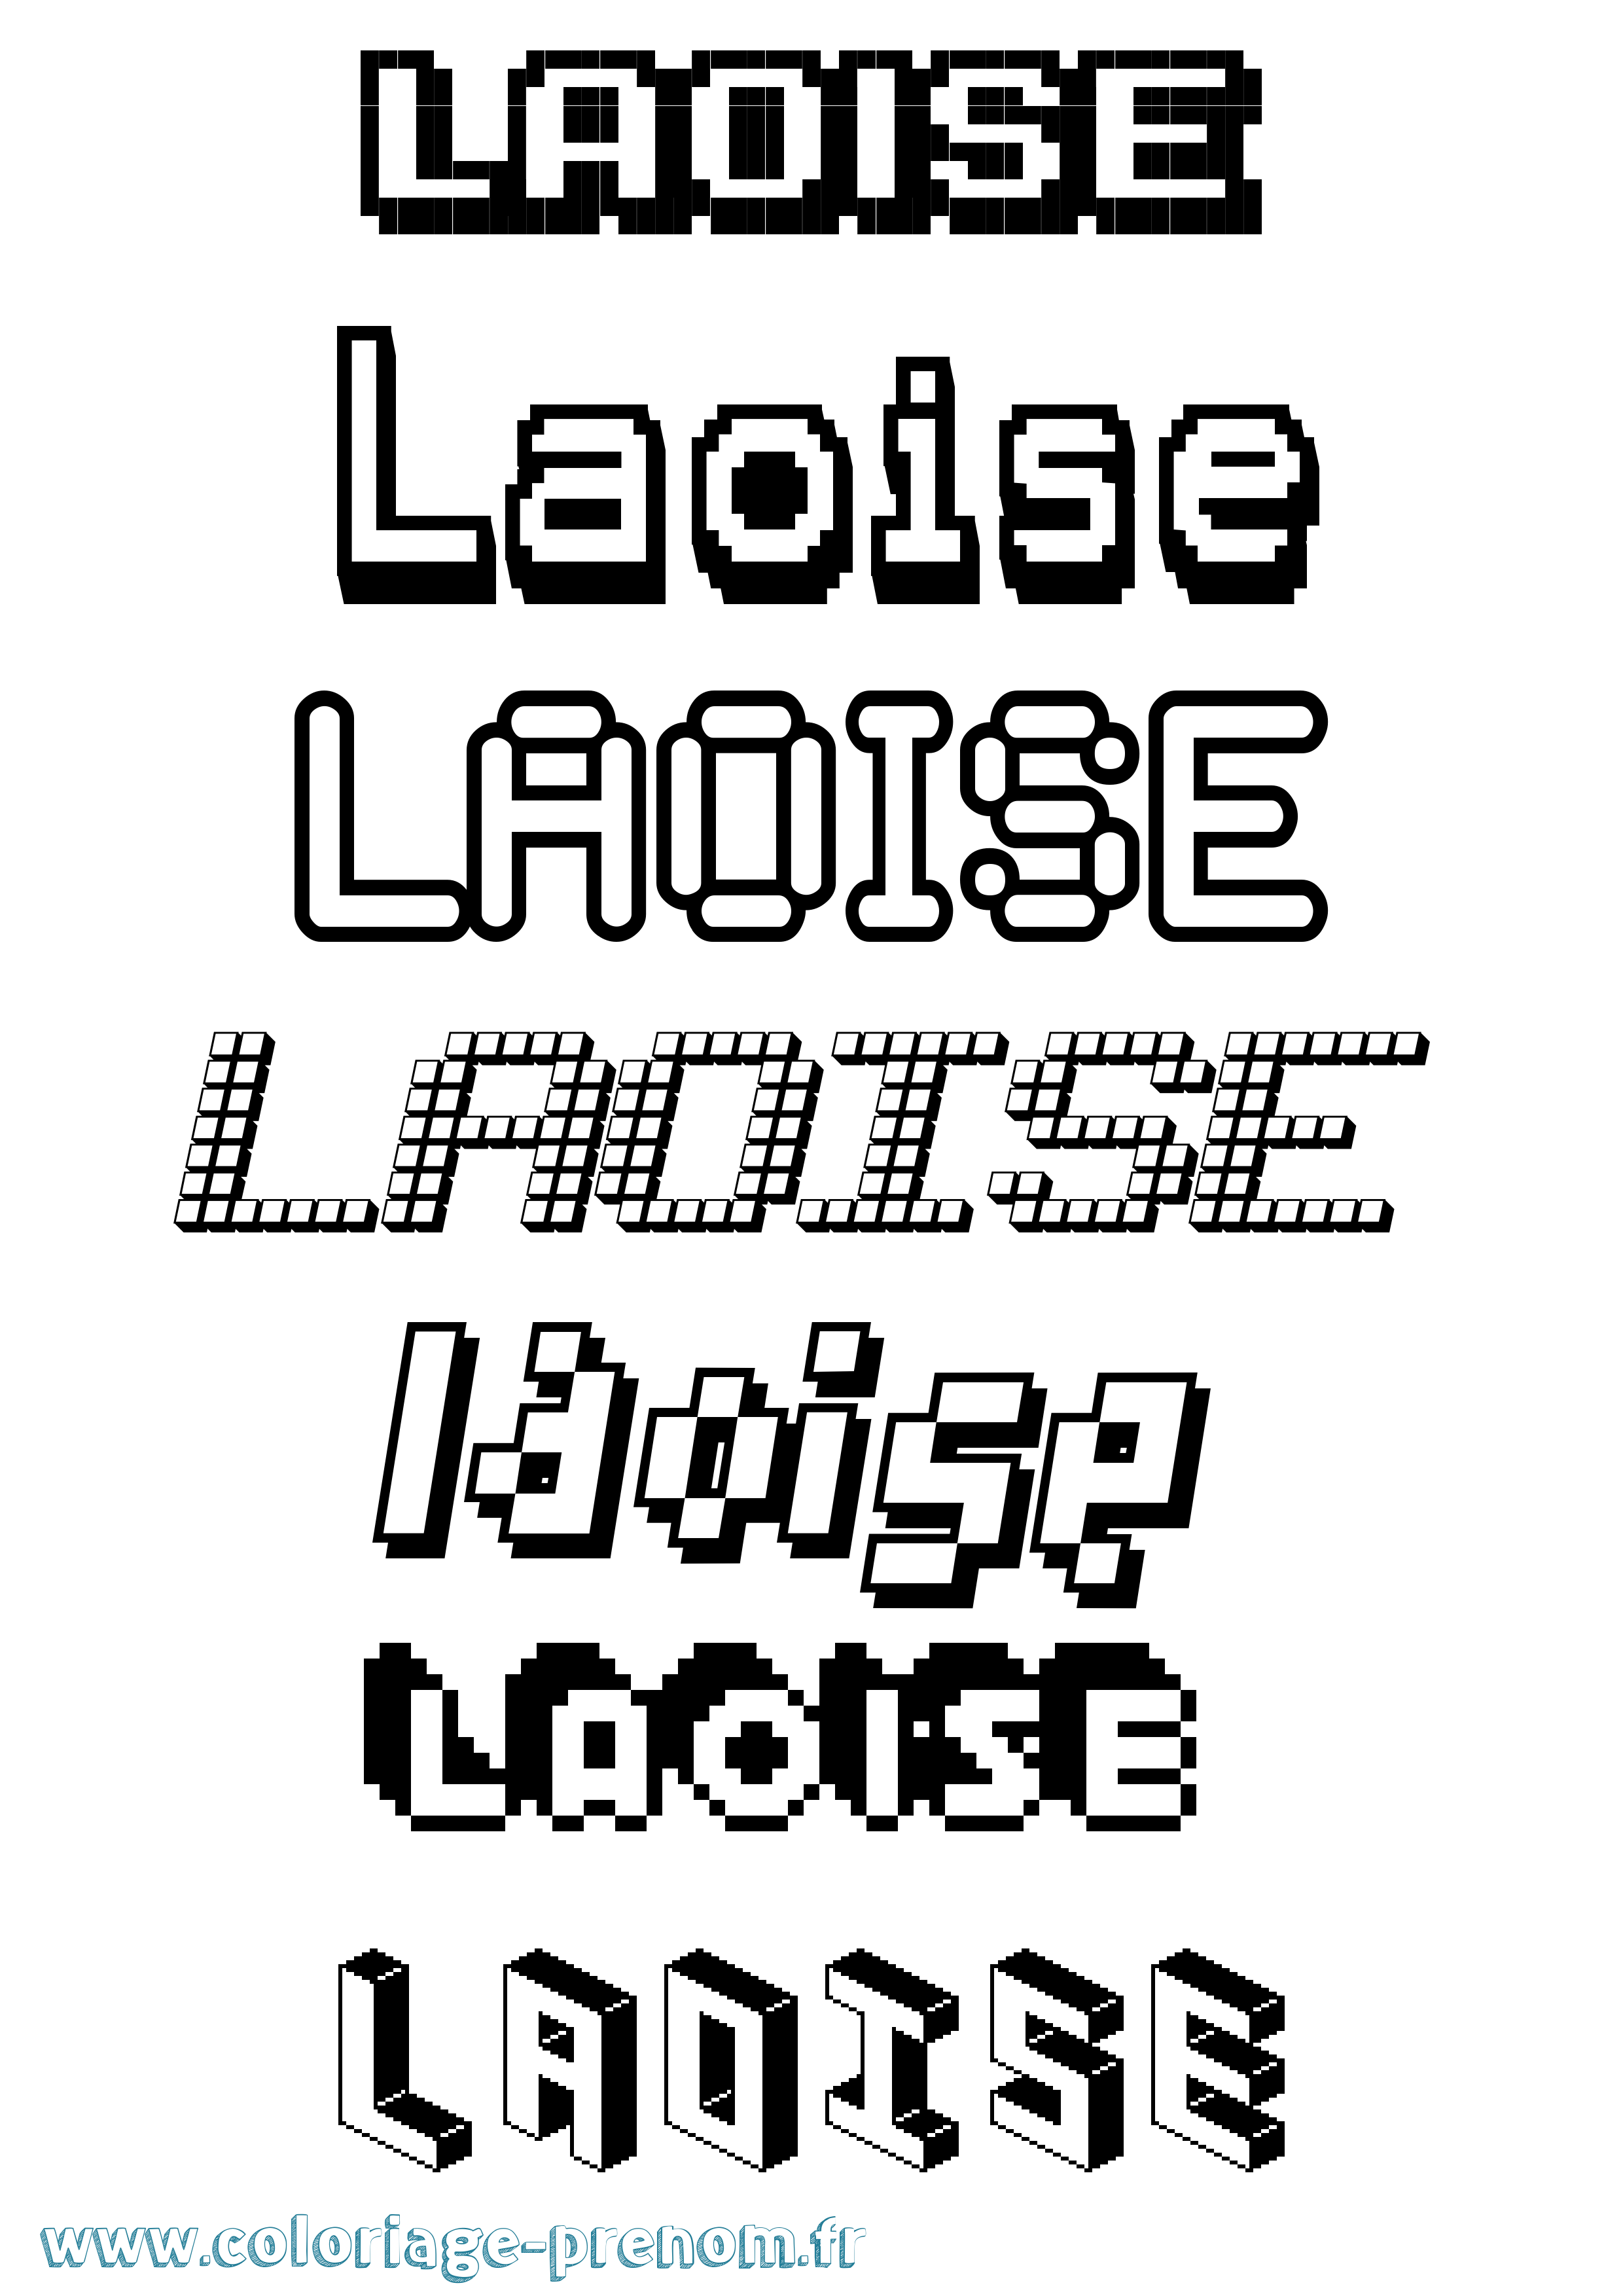 Coloriage prénom Laoise Pixel